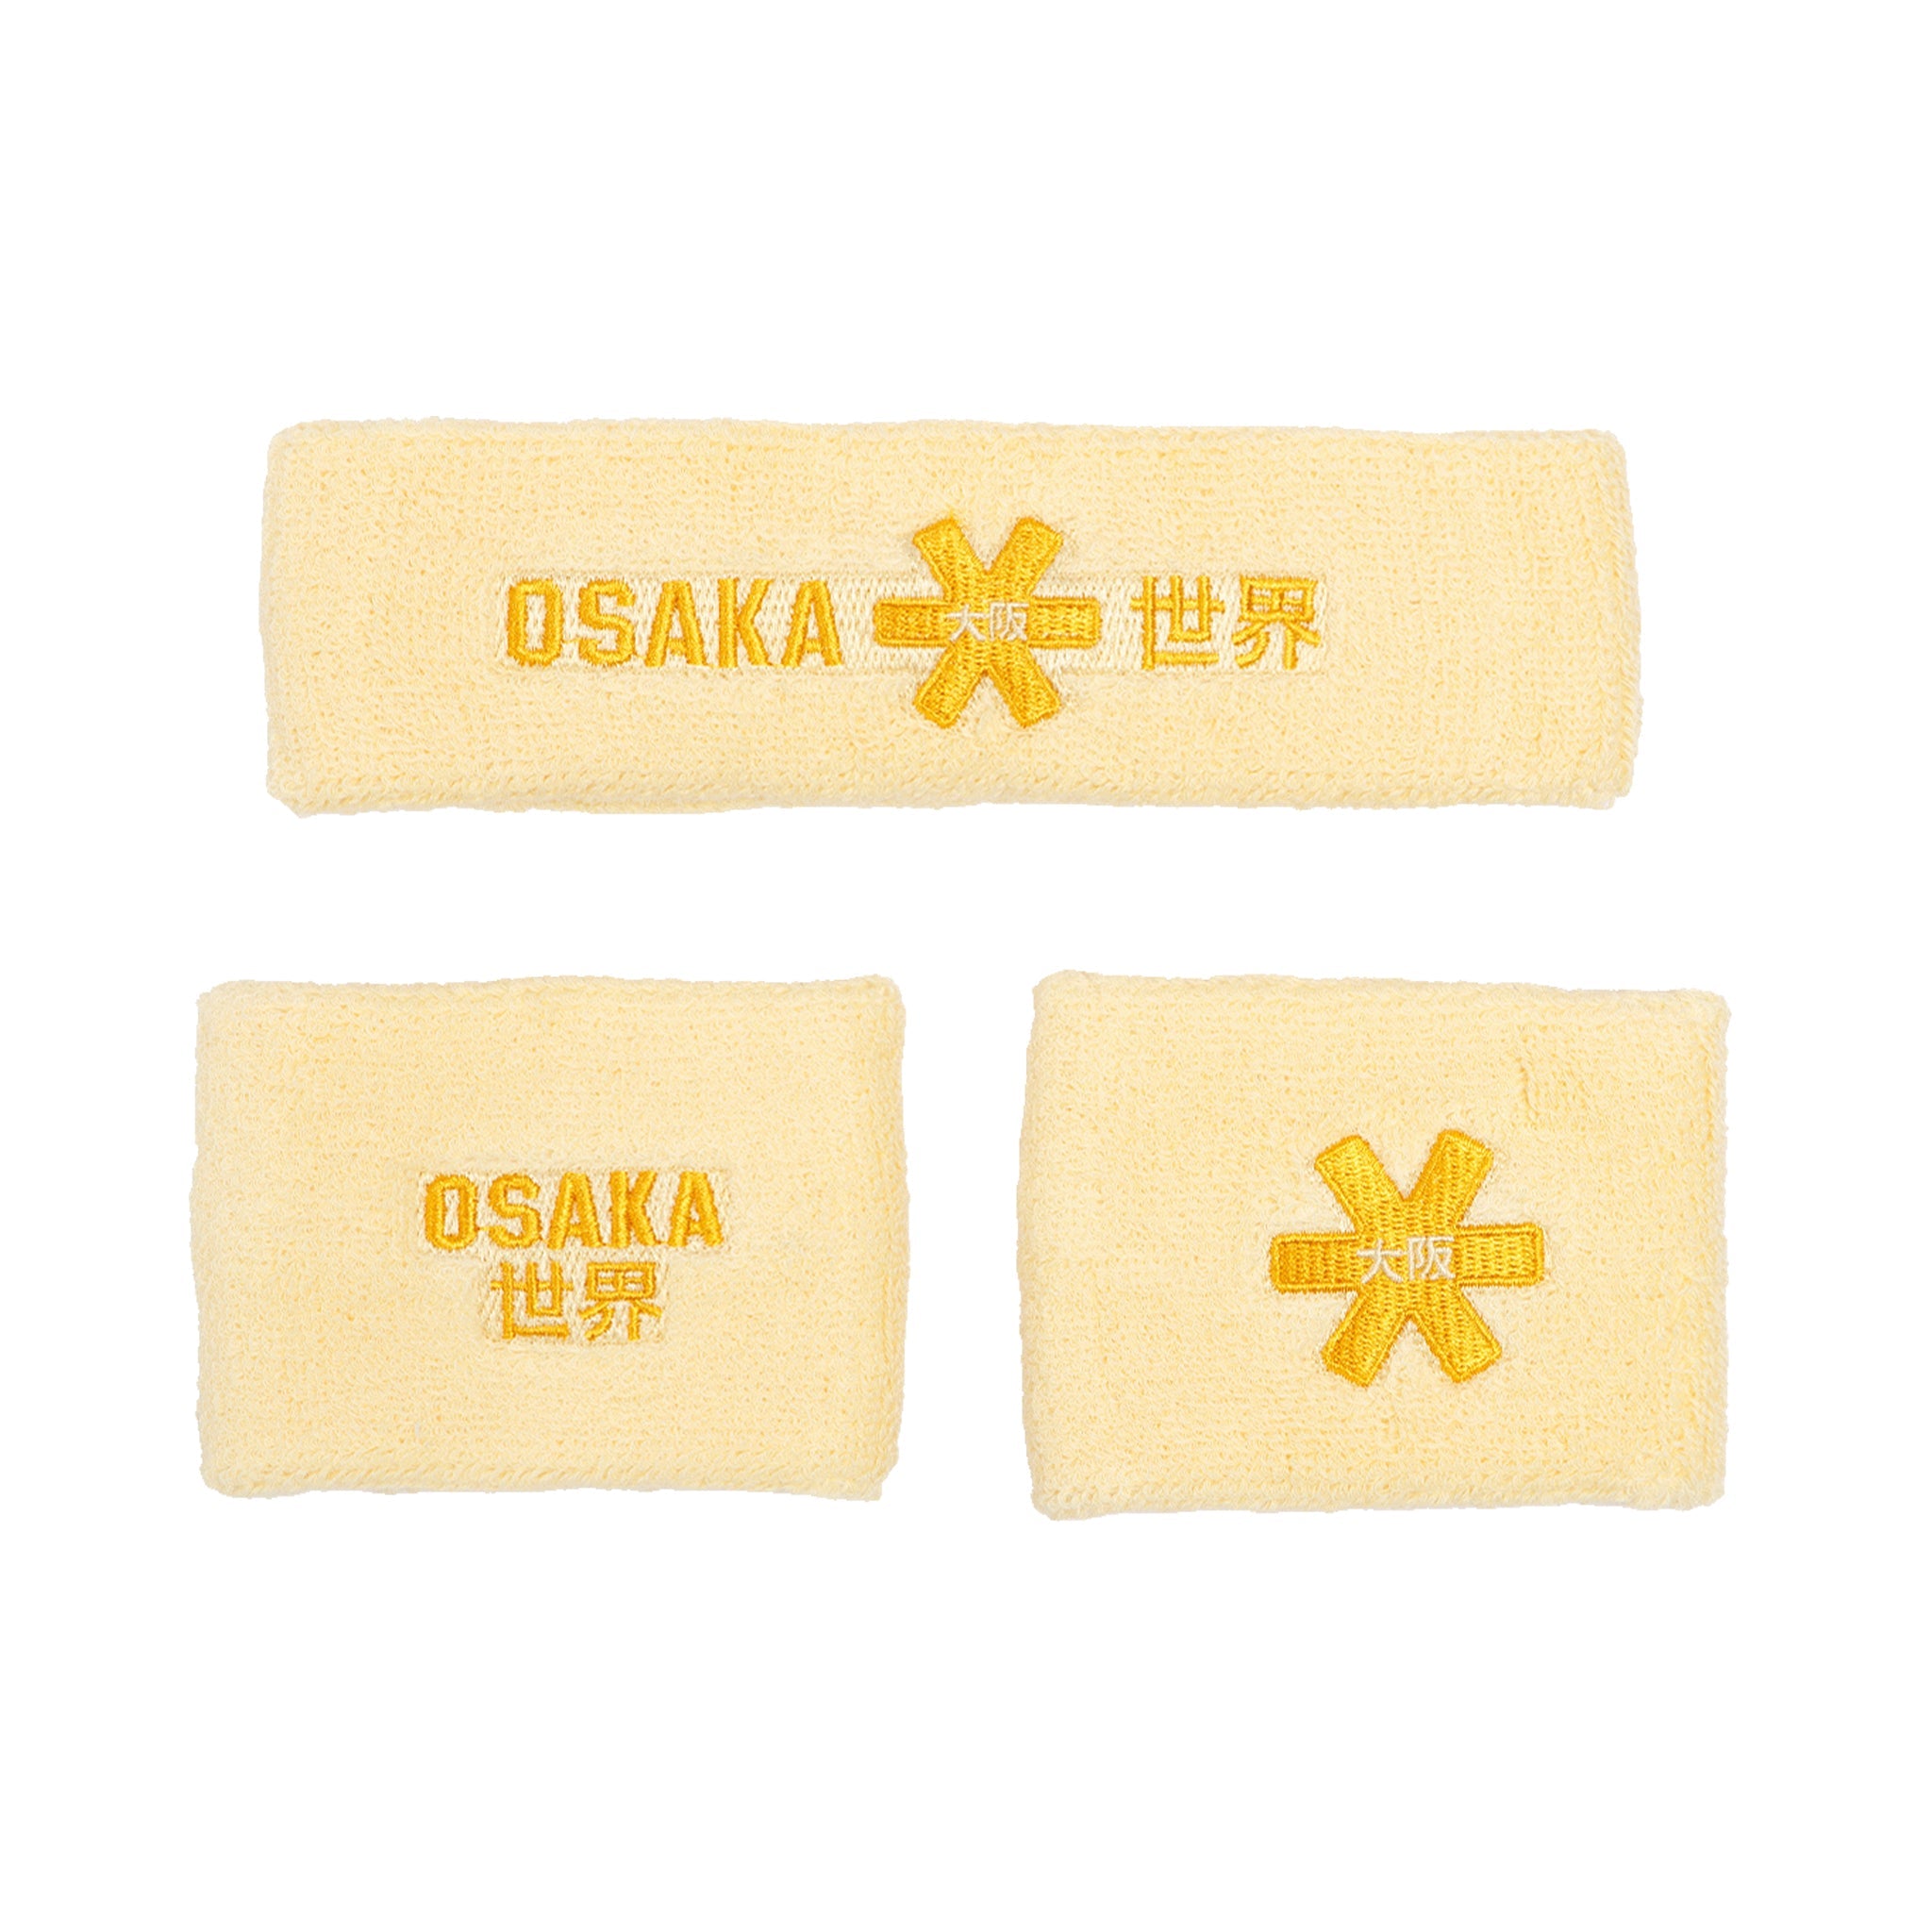 Osaka Sweatband Set 2.0